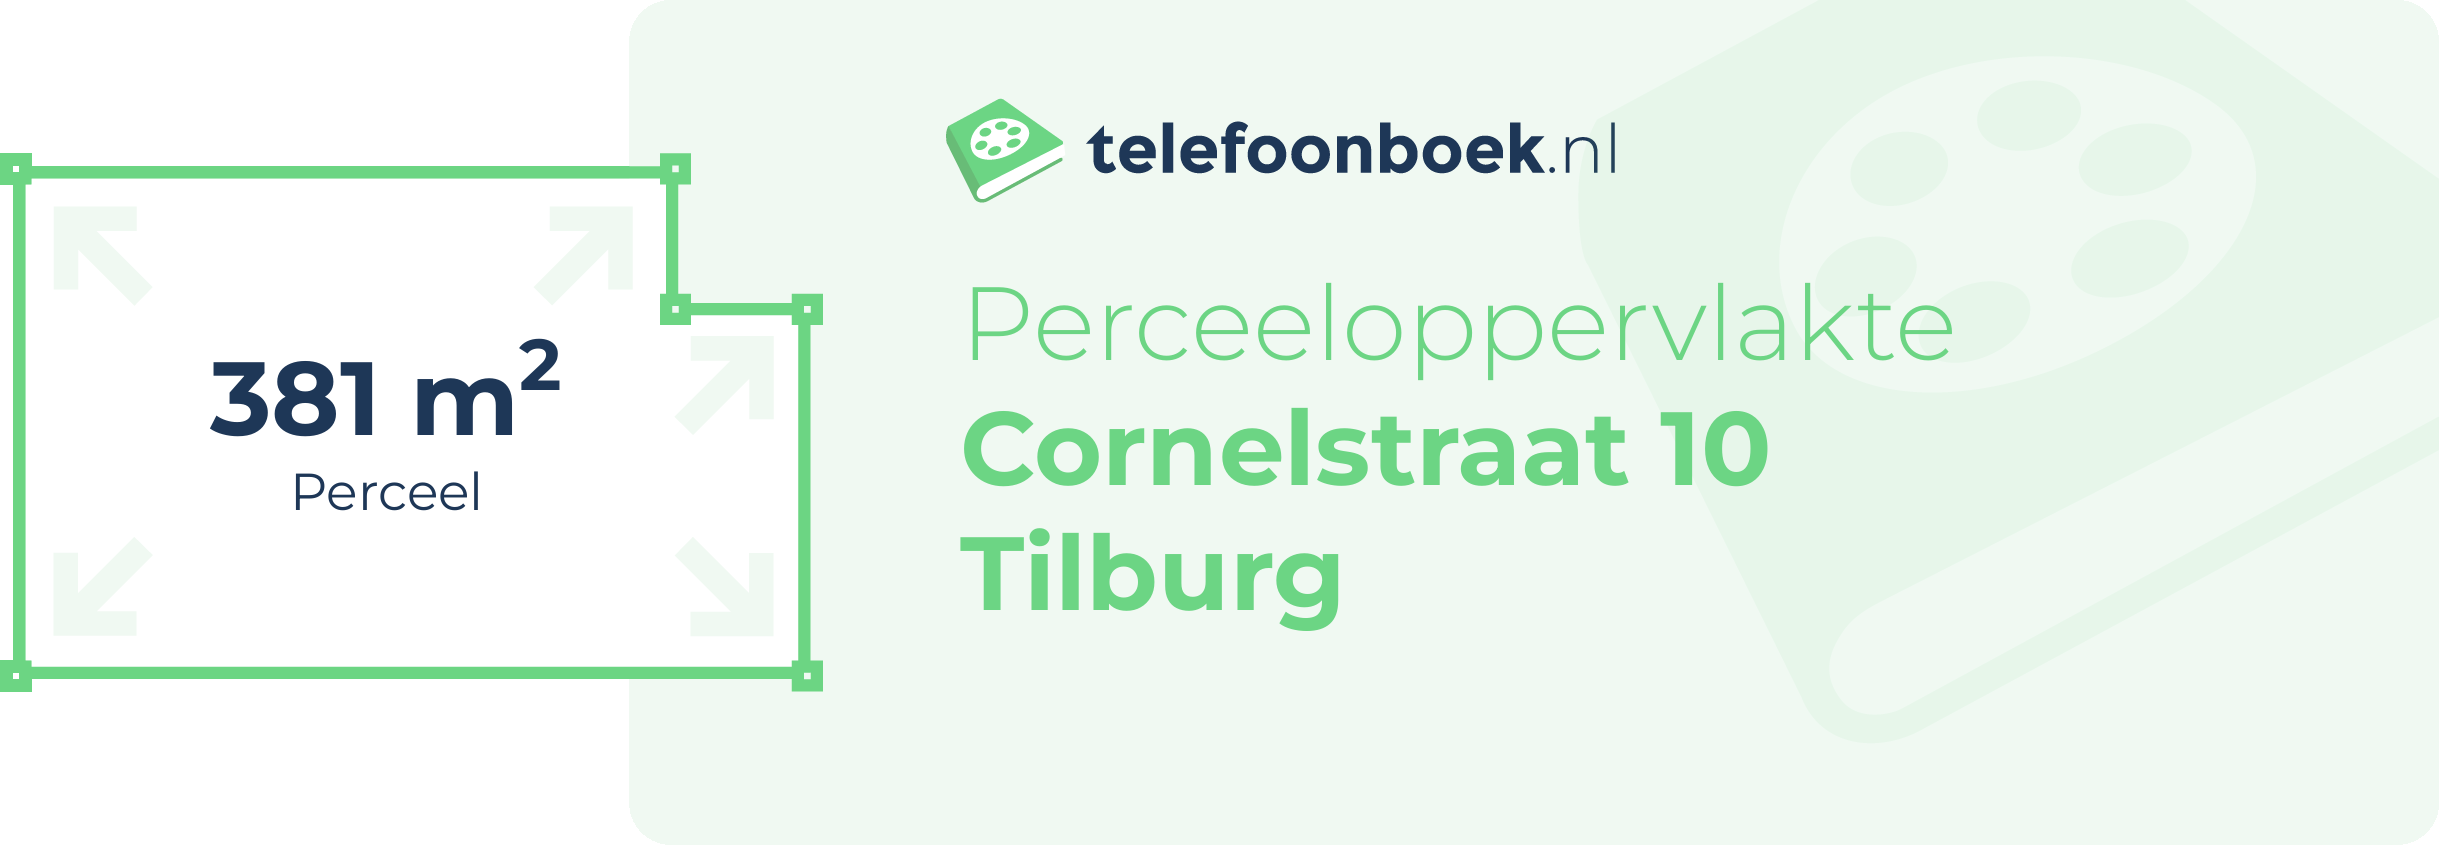 Perceeloppervlakte Cornelstraat 10 Tilburg